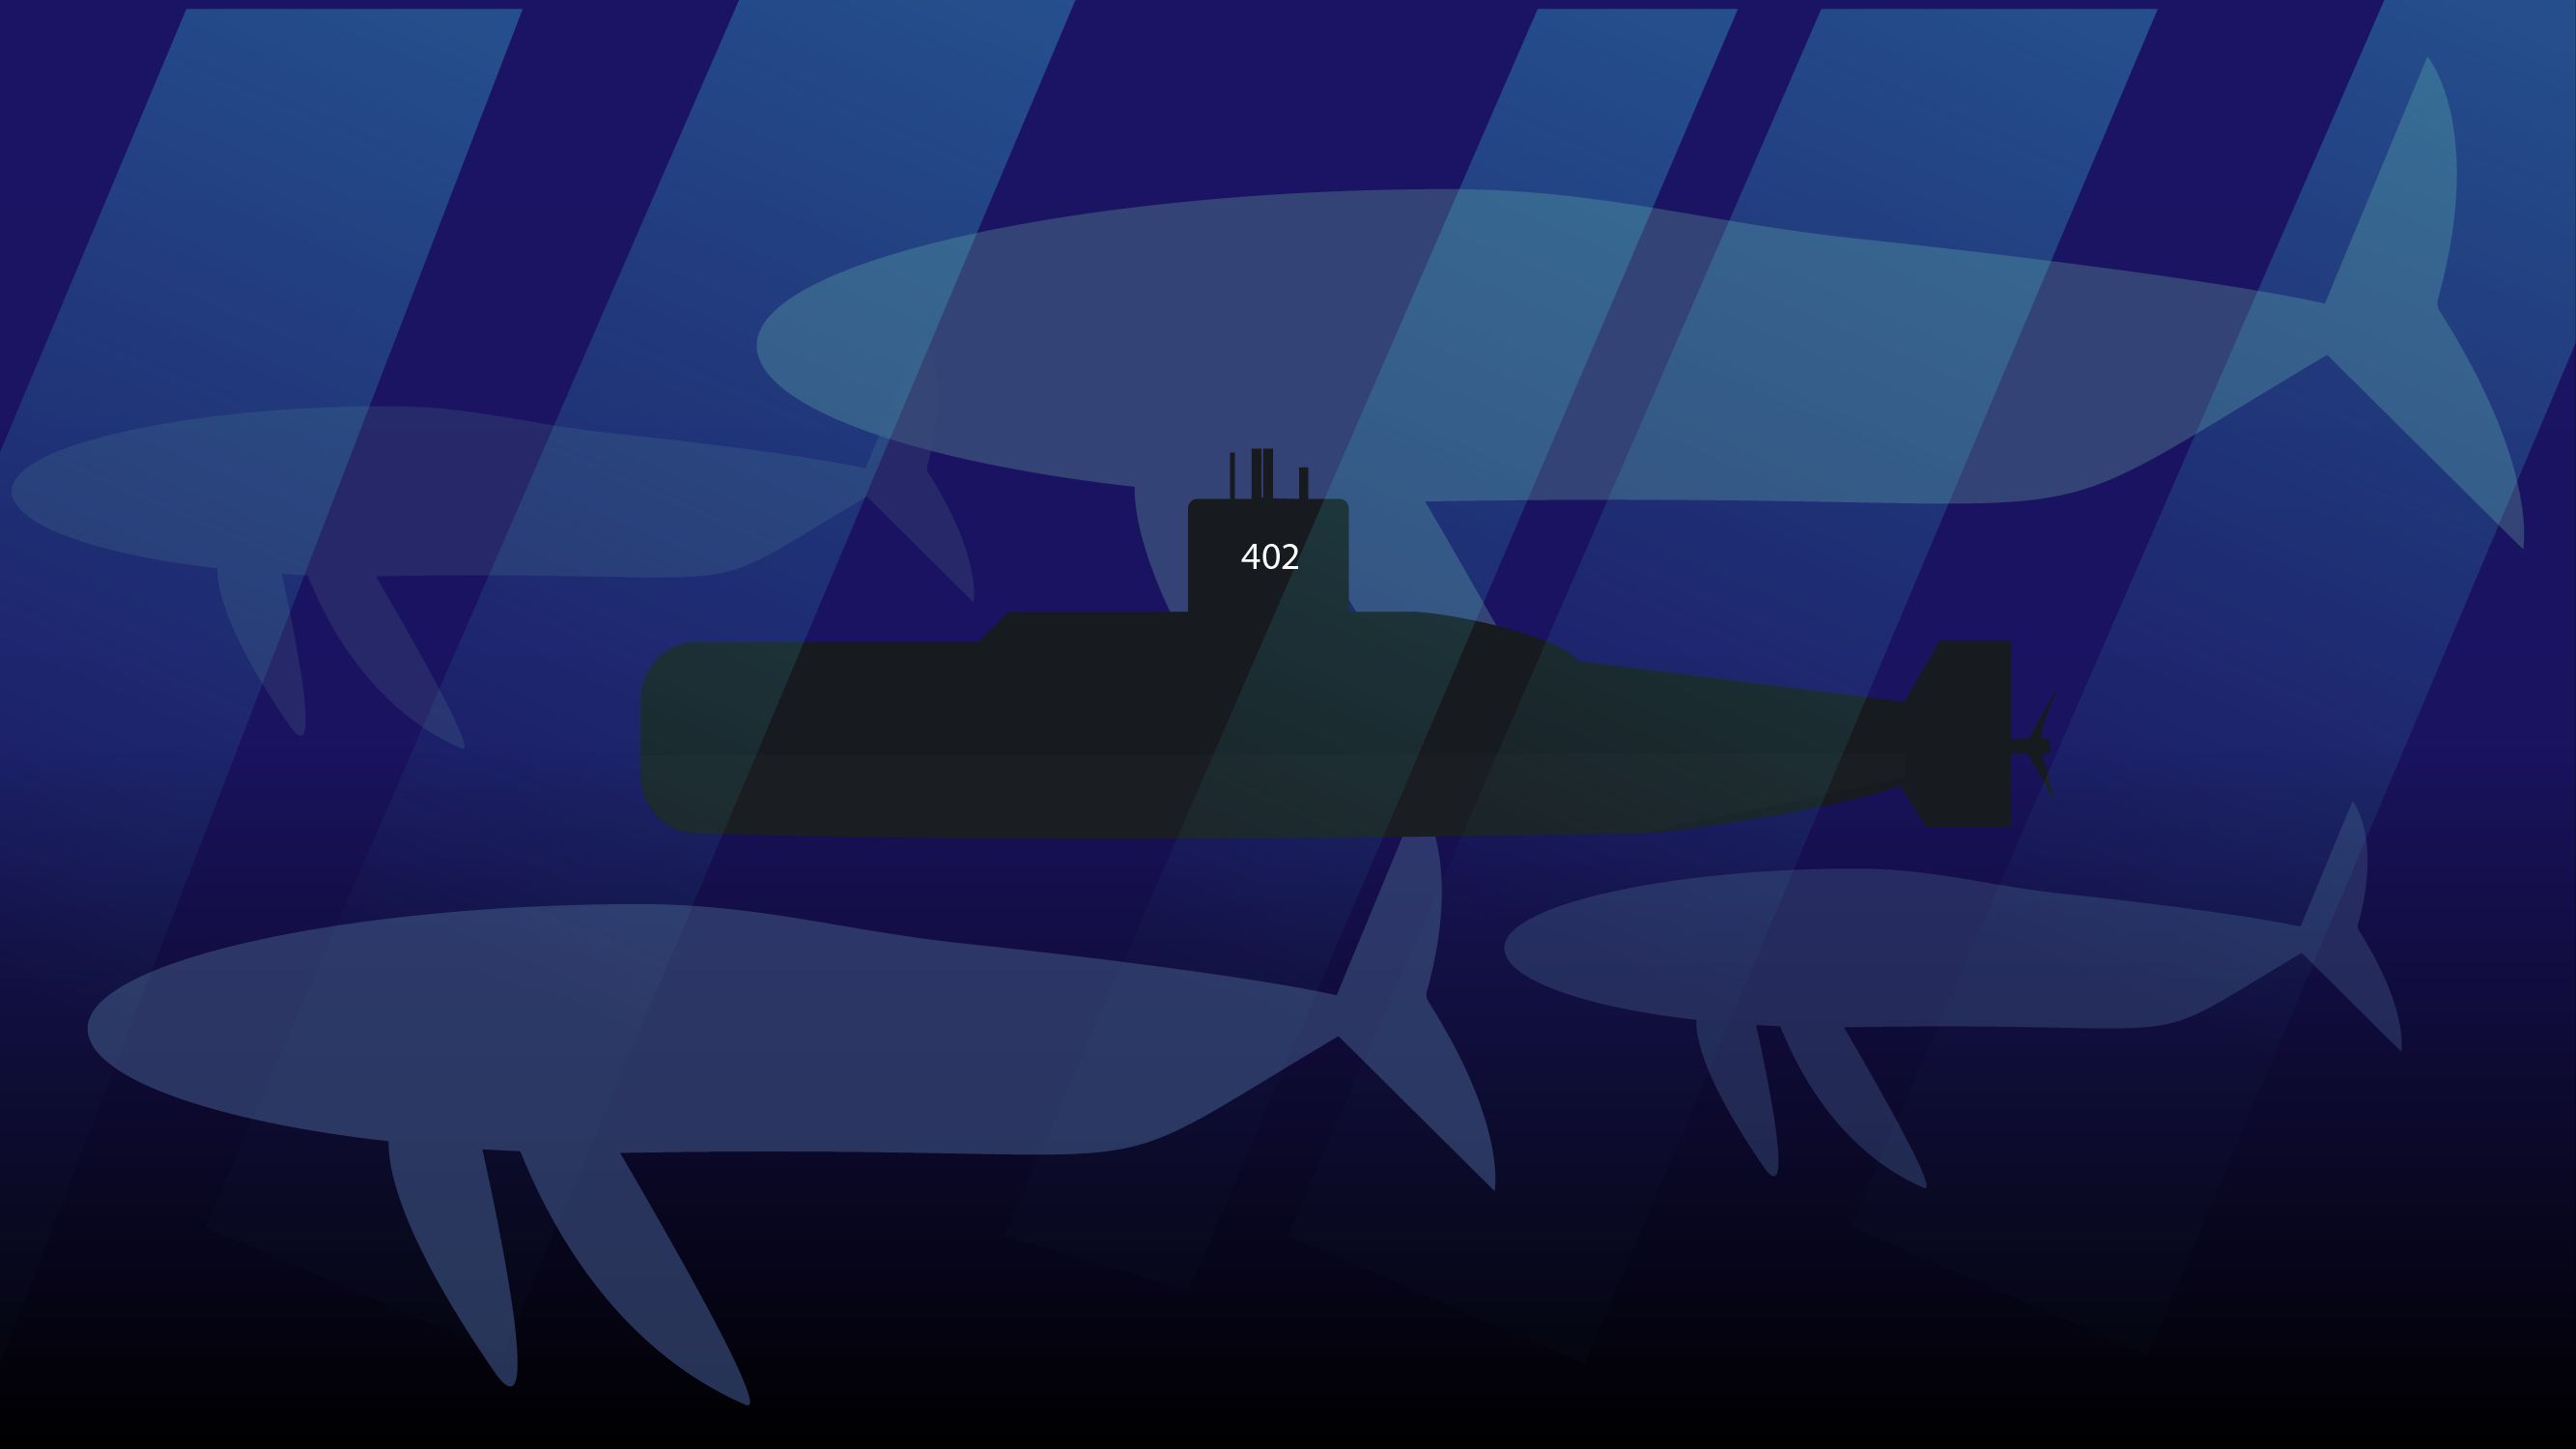 Скачать обои бесплатно Военные, Подводная Лодка, Военные Корабли картинка на рабочий стол ПК